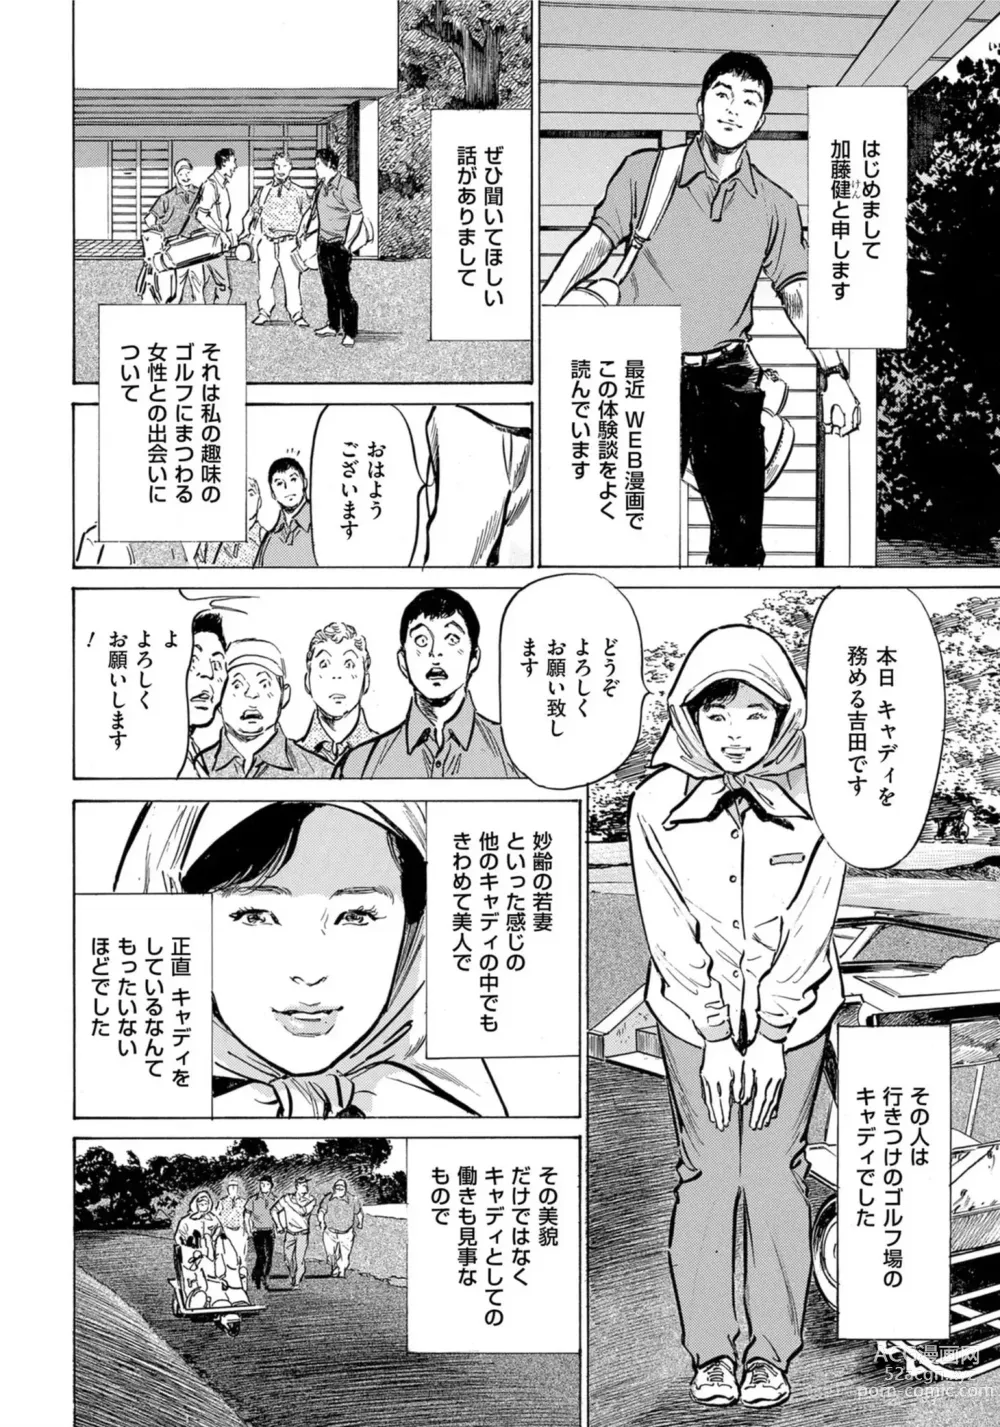 Page 3 of manga Hontou ni Atta Omowazu Zawatsuku Totteoki no Hanashi 14 episodes